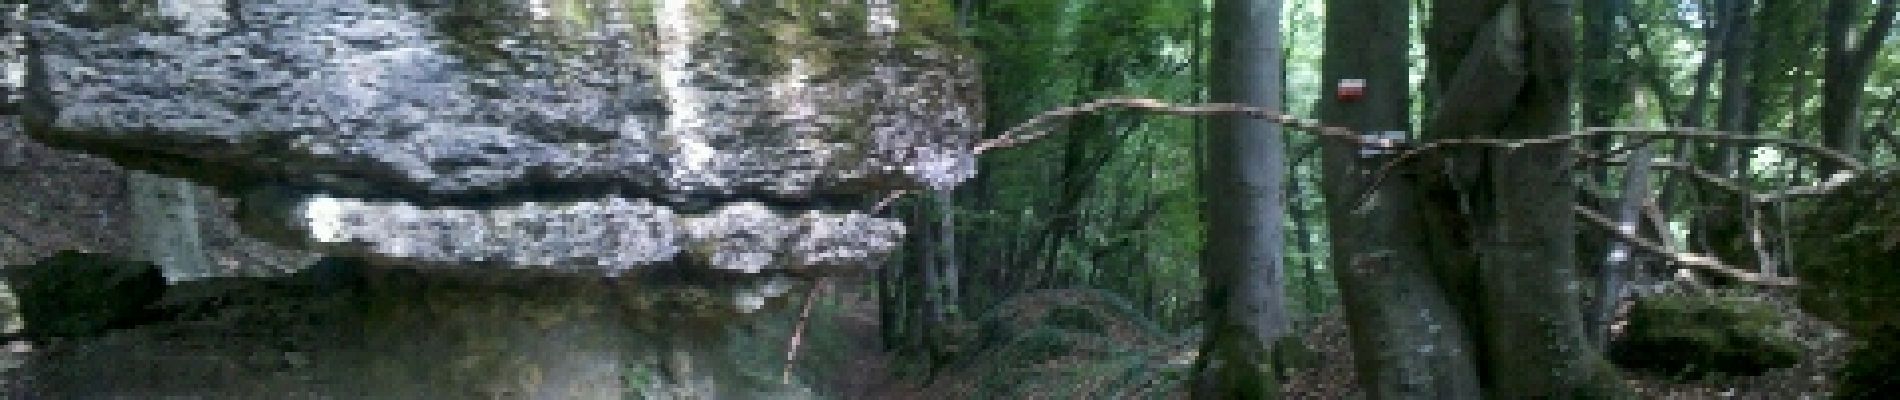 Trail Walking Ancy-Dornot - Dornot - Croix saint clément - pierre qui tourne - rochers de la Fraze - Photo